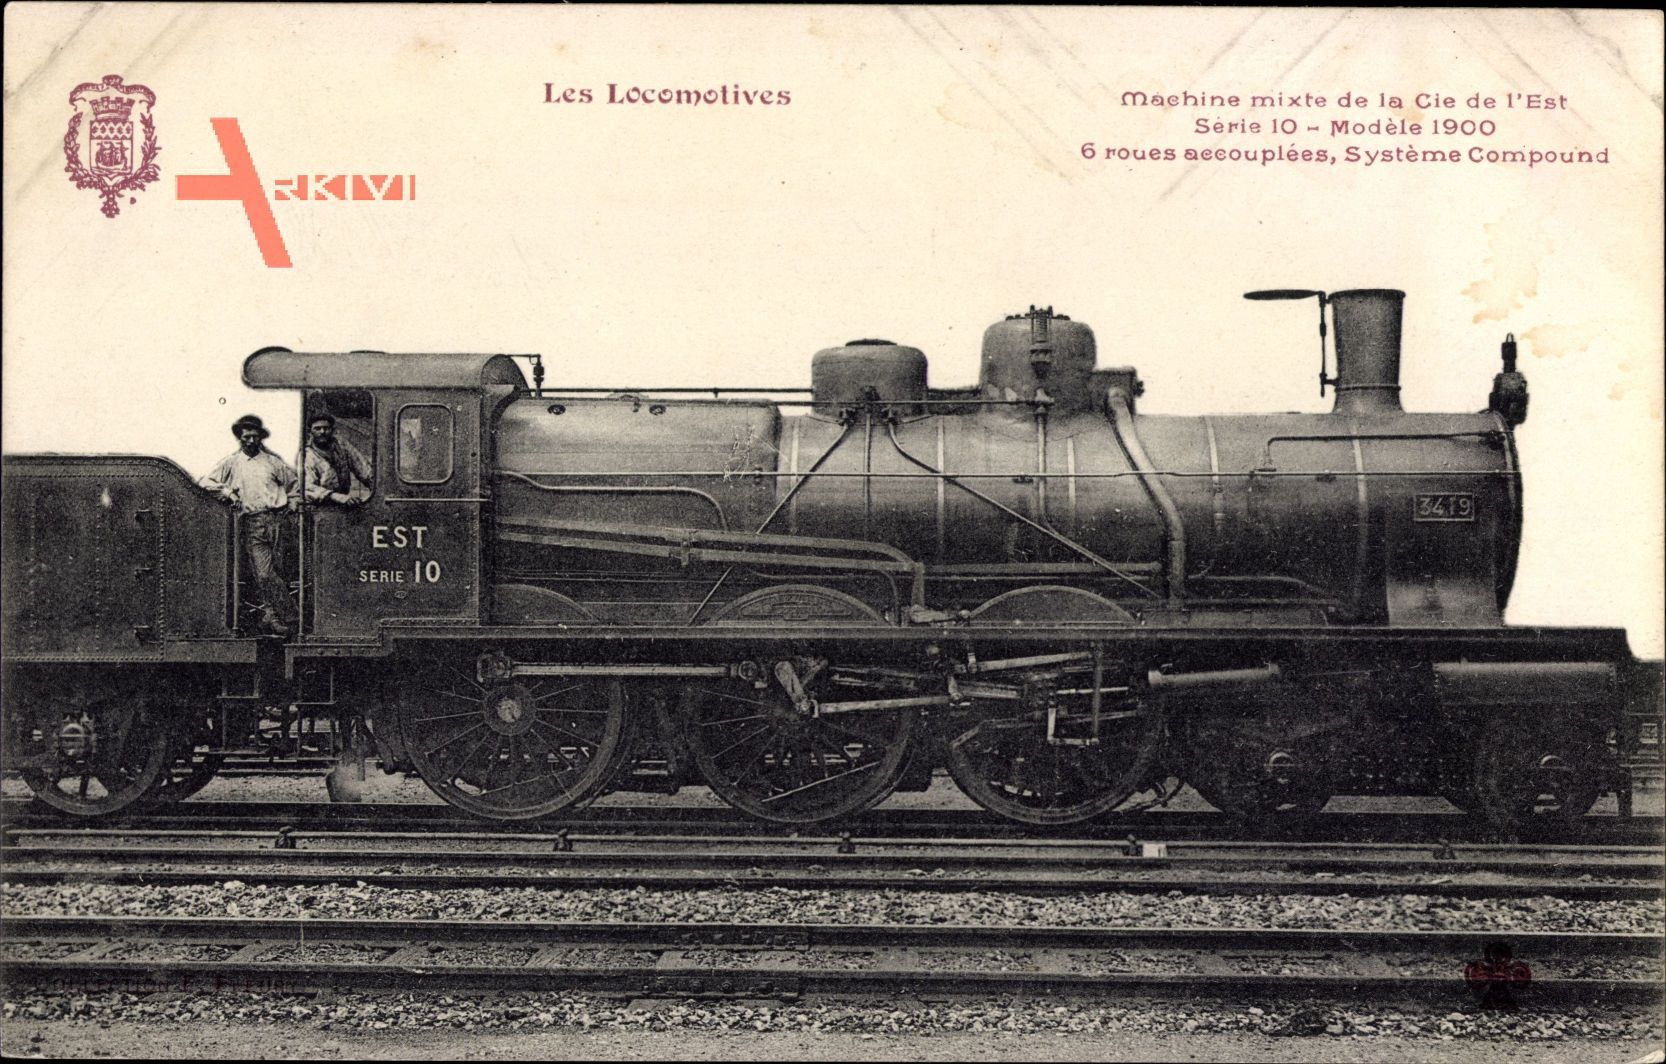 Französische Eisenbahn, Locomotive, Cie de lEst, Serie 10, Modele 1900, 3419